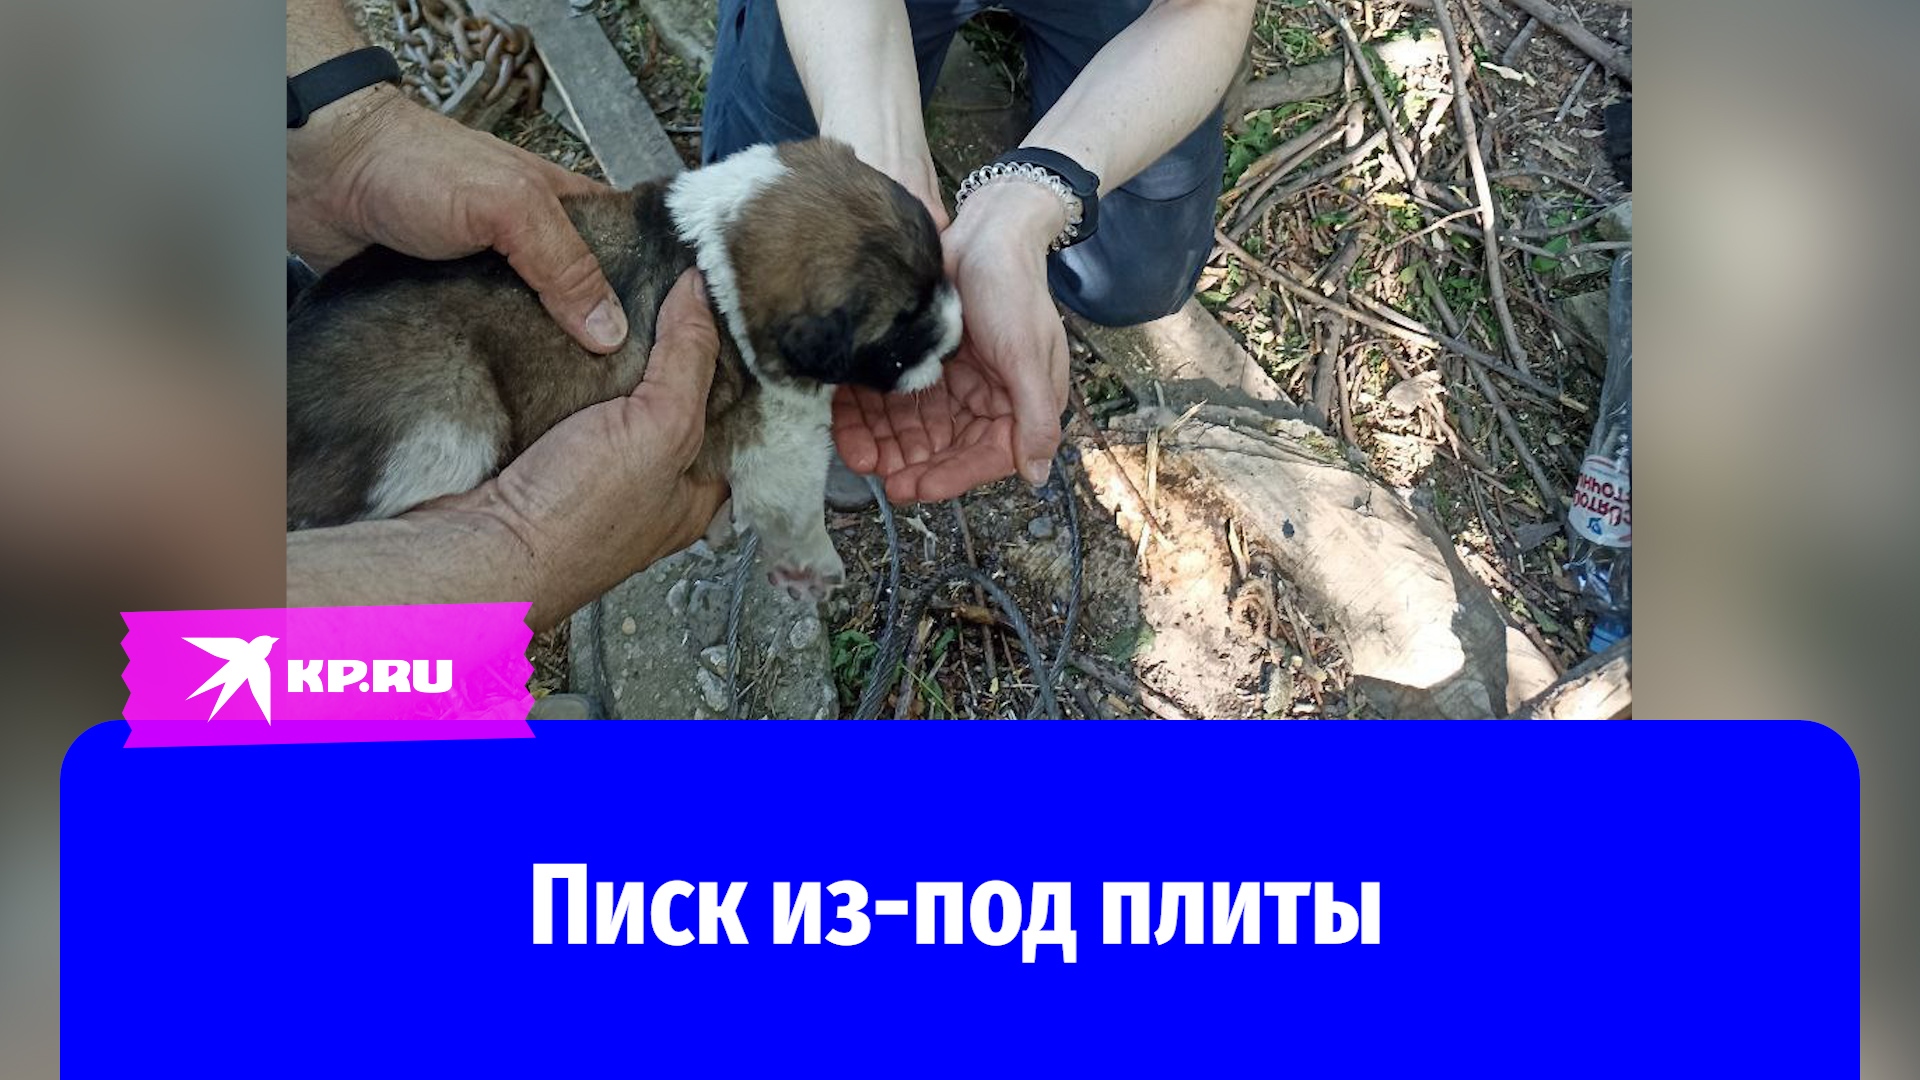 Спасатели достали щенка из подвала под разрушенным гаражом в Москве